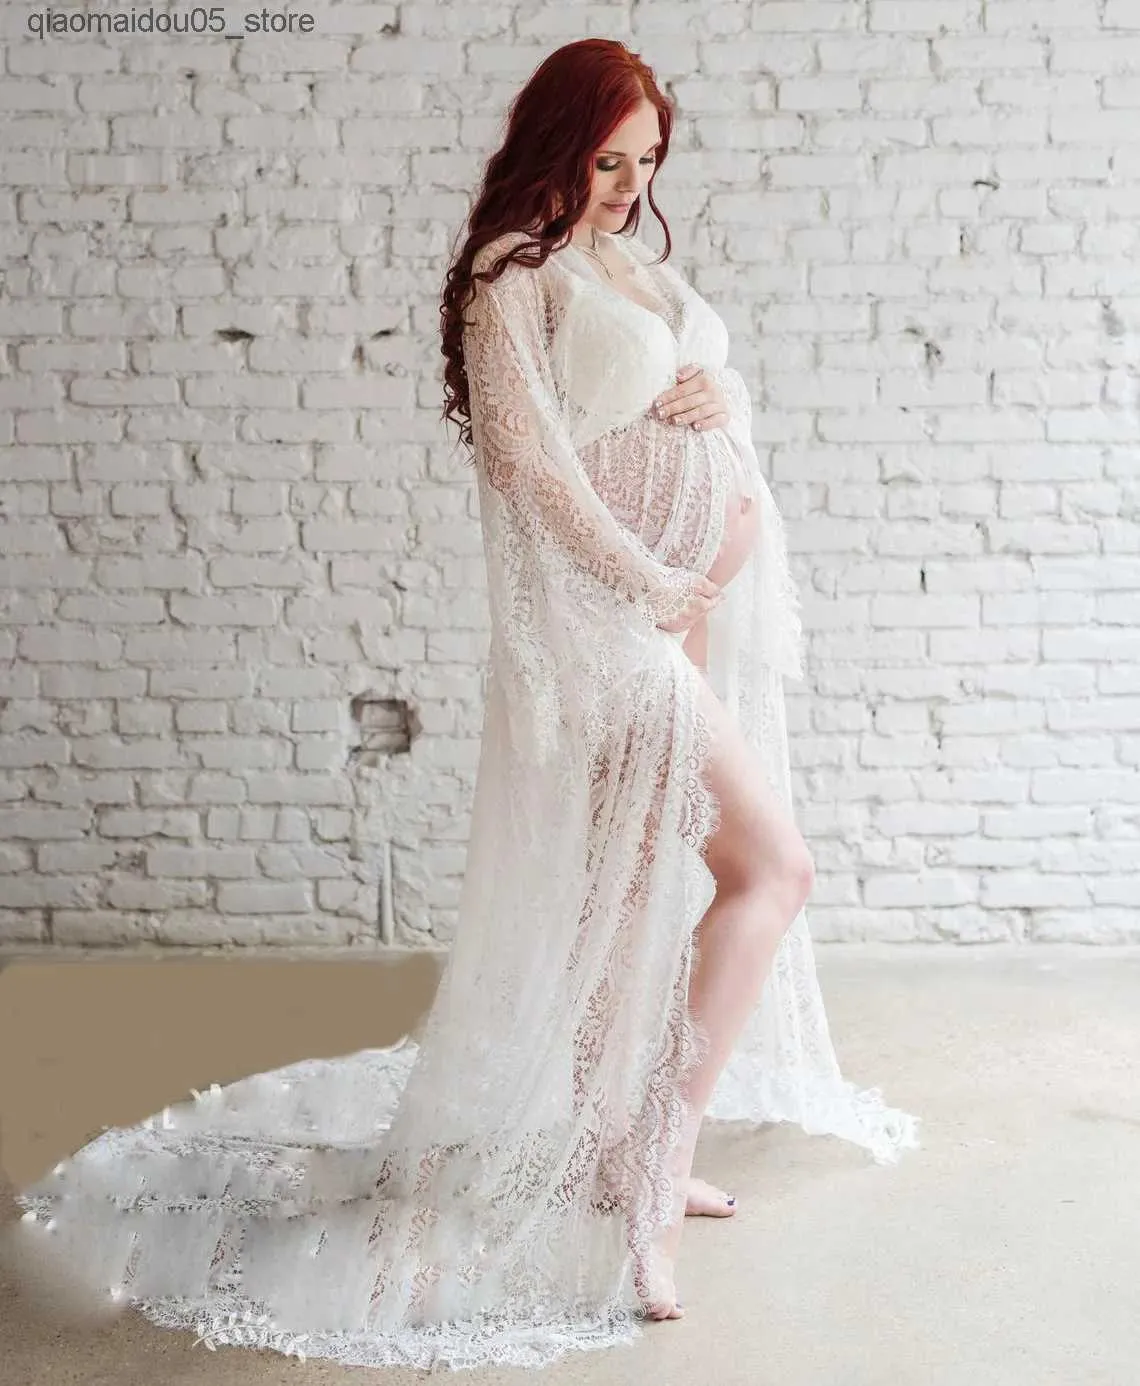 Robes de maternité Dernières photos de robes pour femmes enceintes avec des cils et de la dentelle.Photos de femmes enceintes atteintes de vestidos grossides en dentelle blanche Q240413